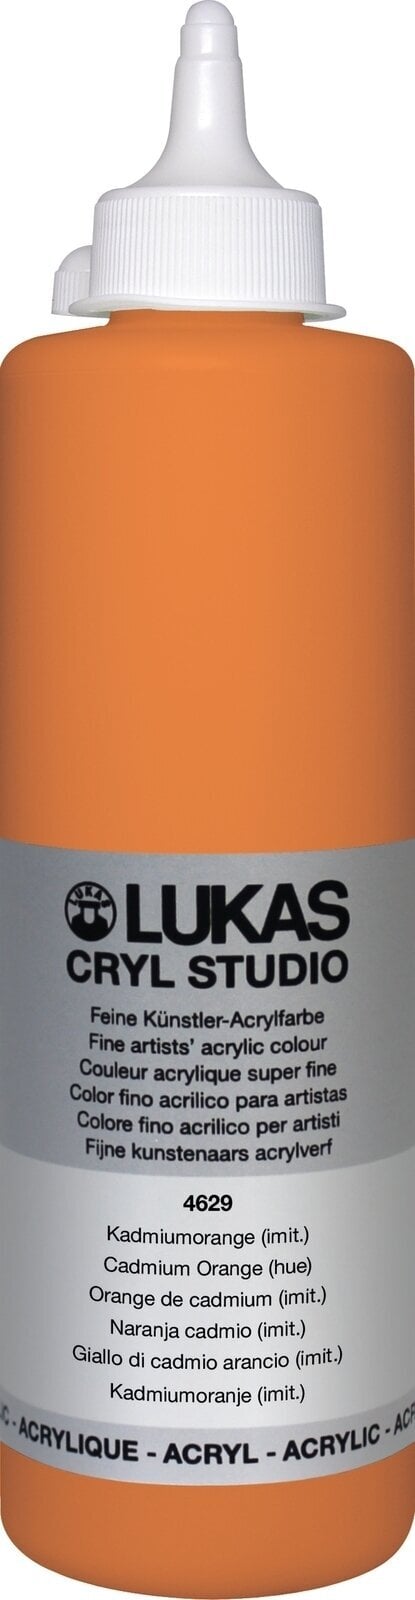 Acrylfarbe Lukas Cryl Studio Acrylfarbe 500 ml Cadmium Orange Hue